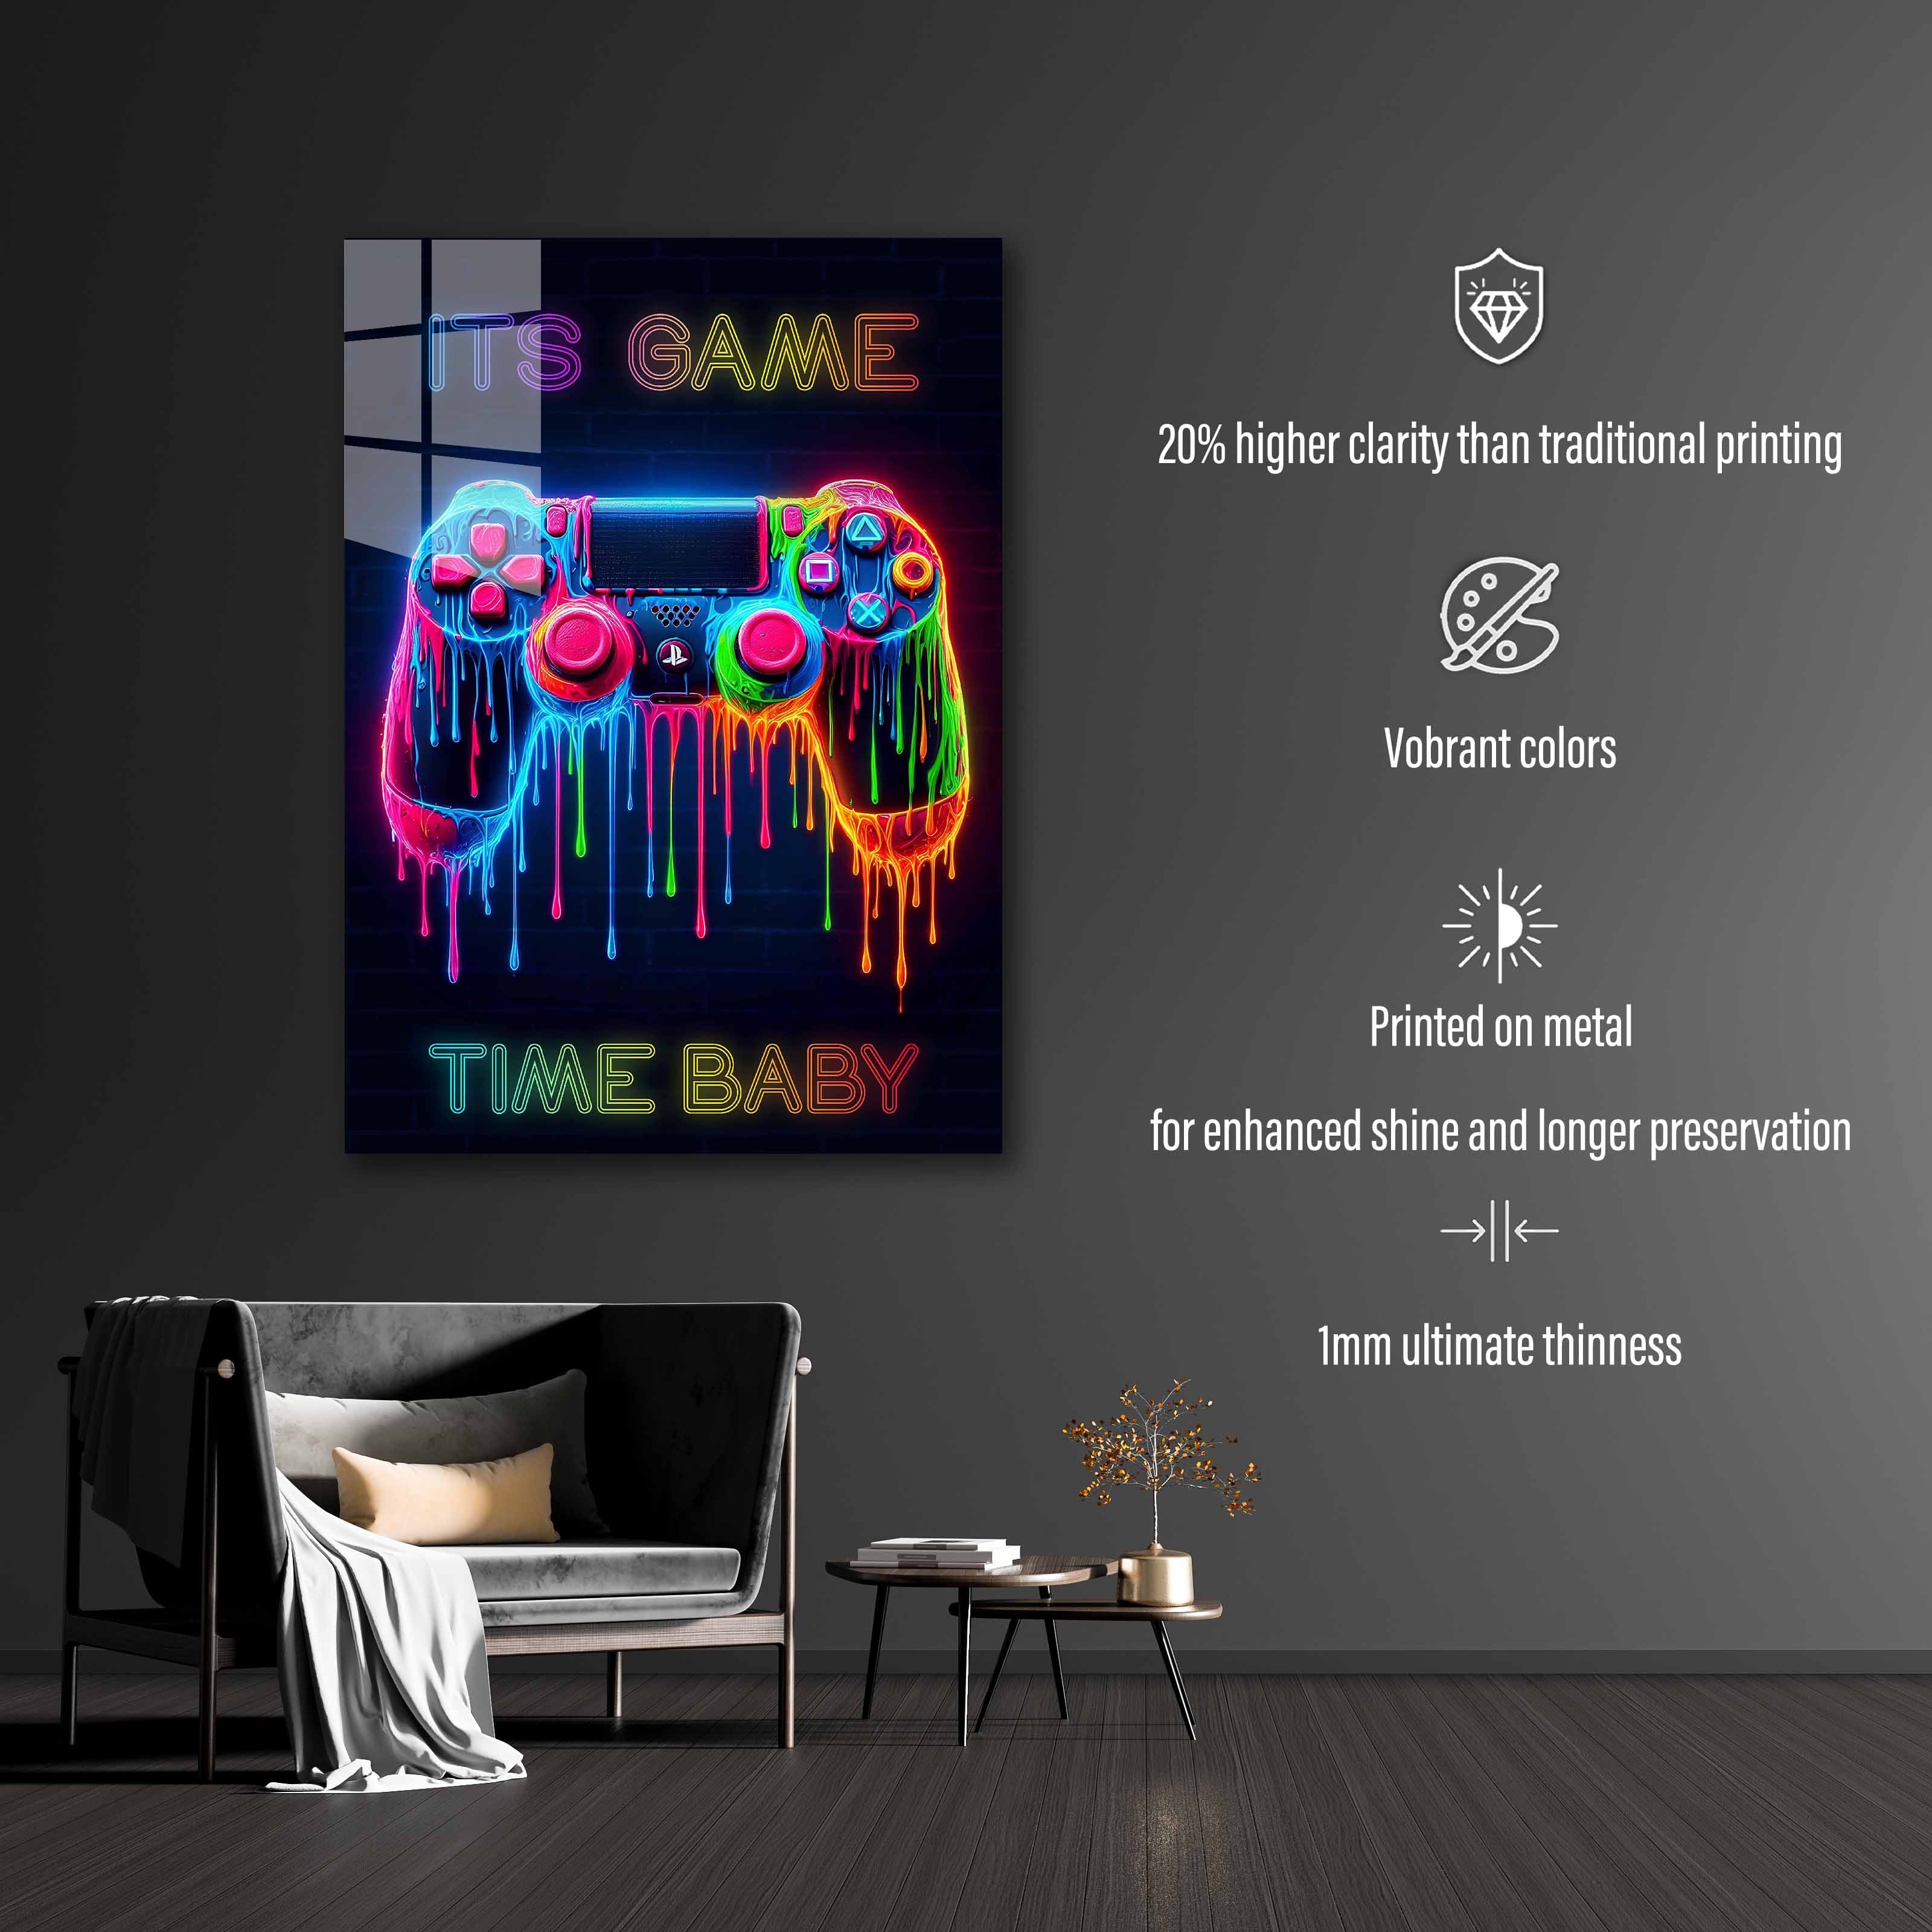 Game time-designed by @RITVIK TAKKAR